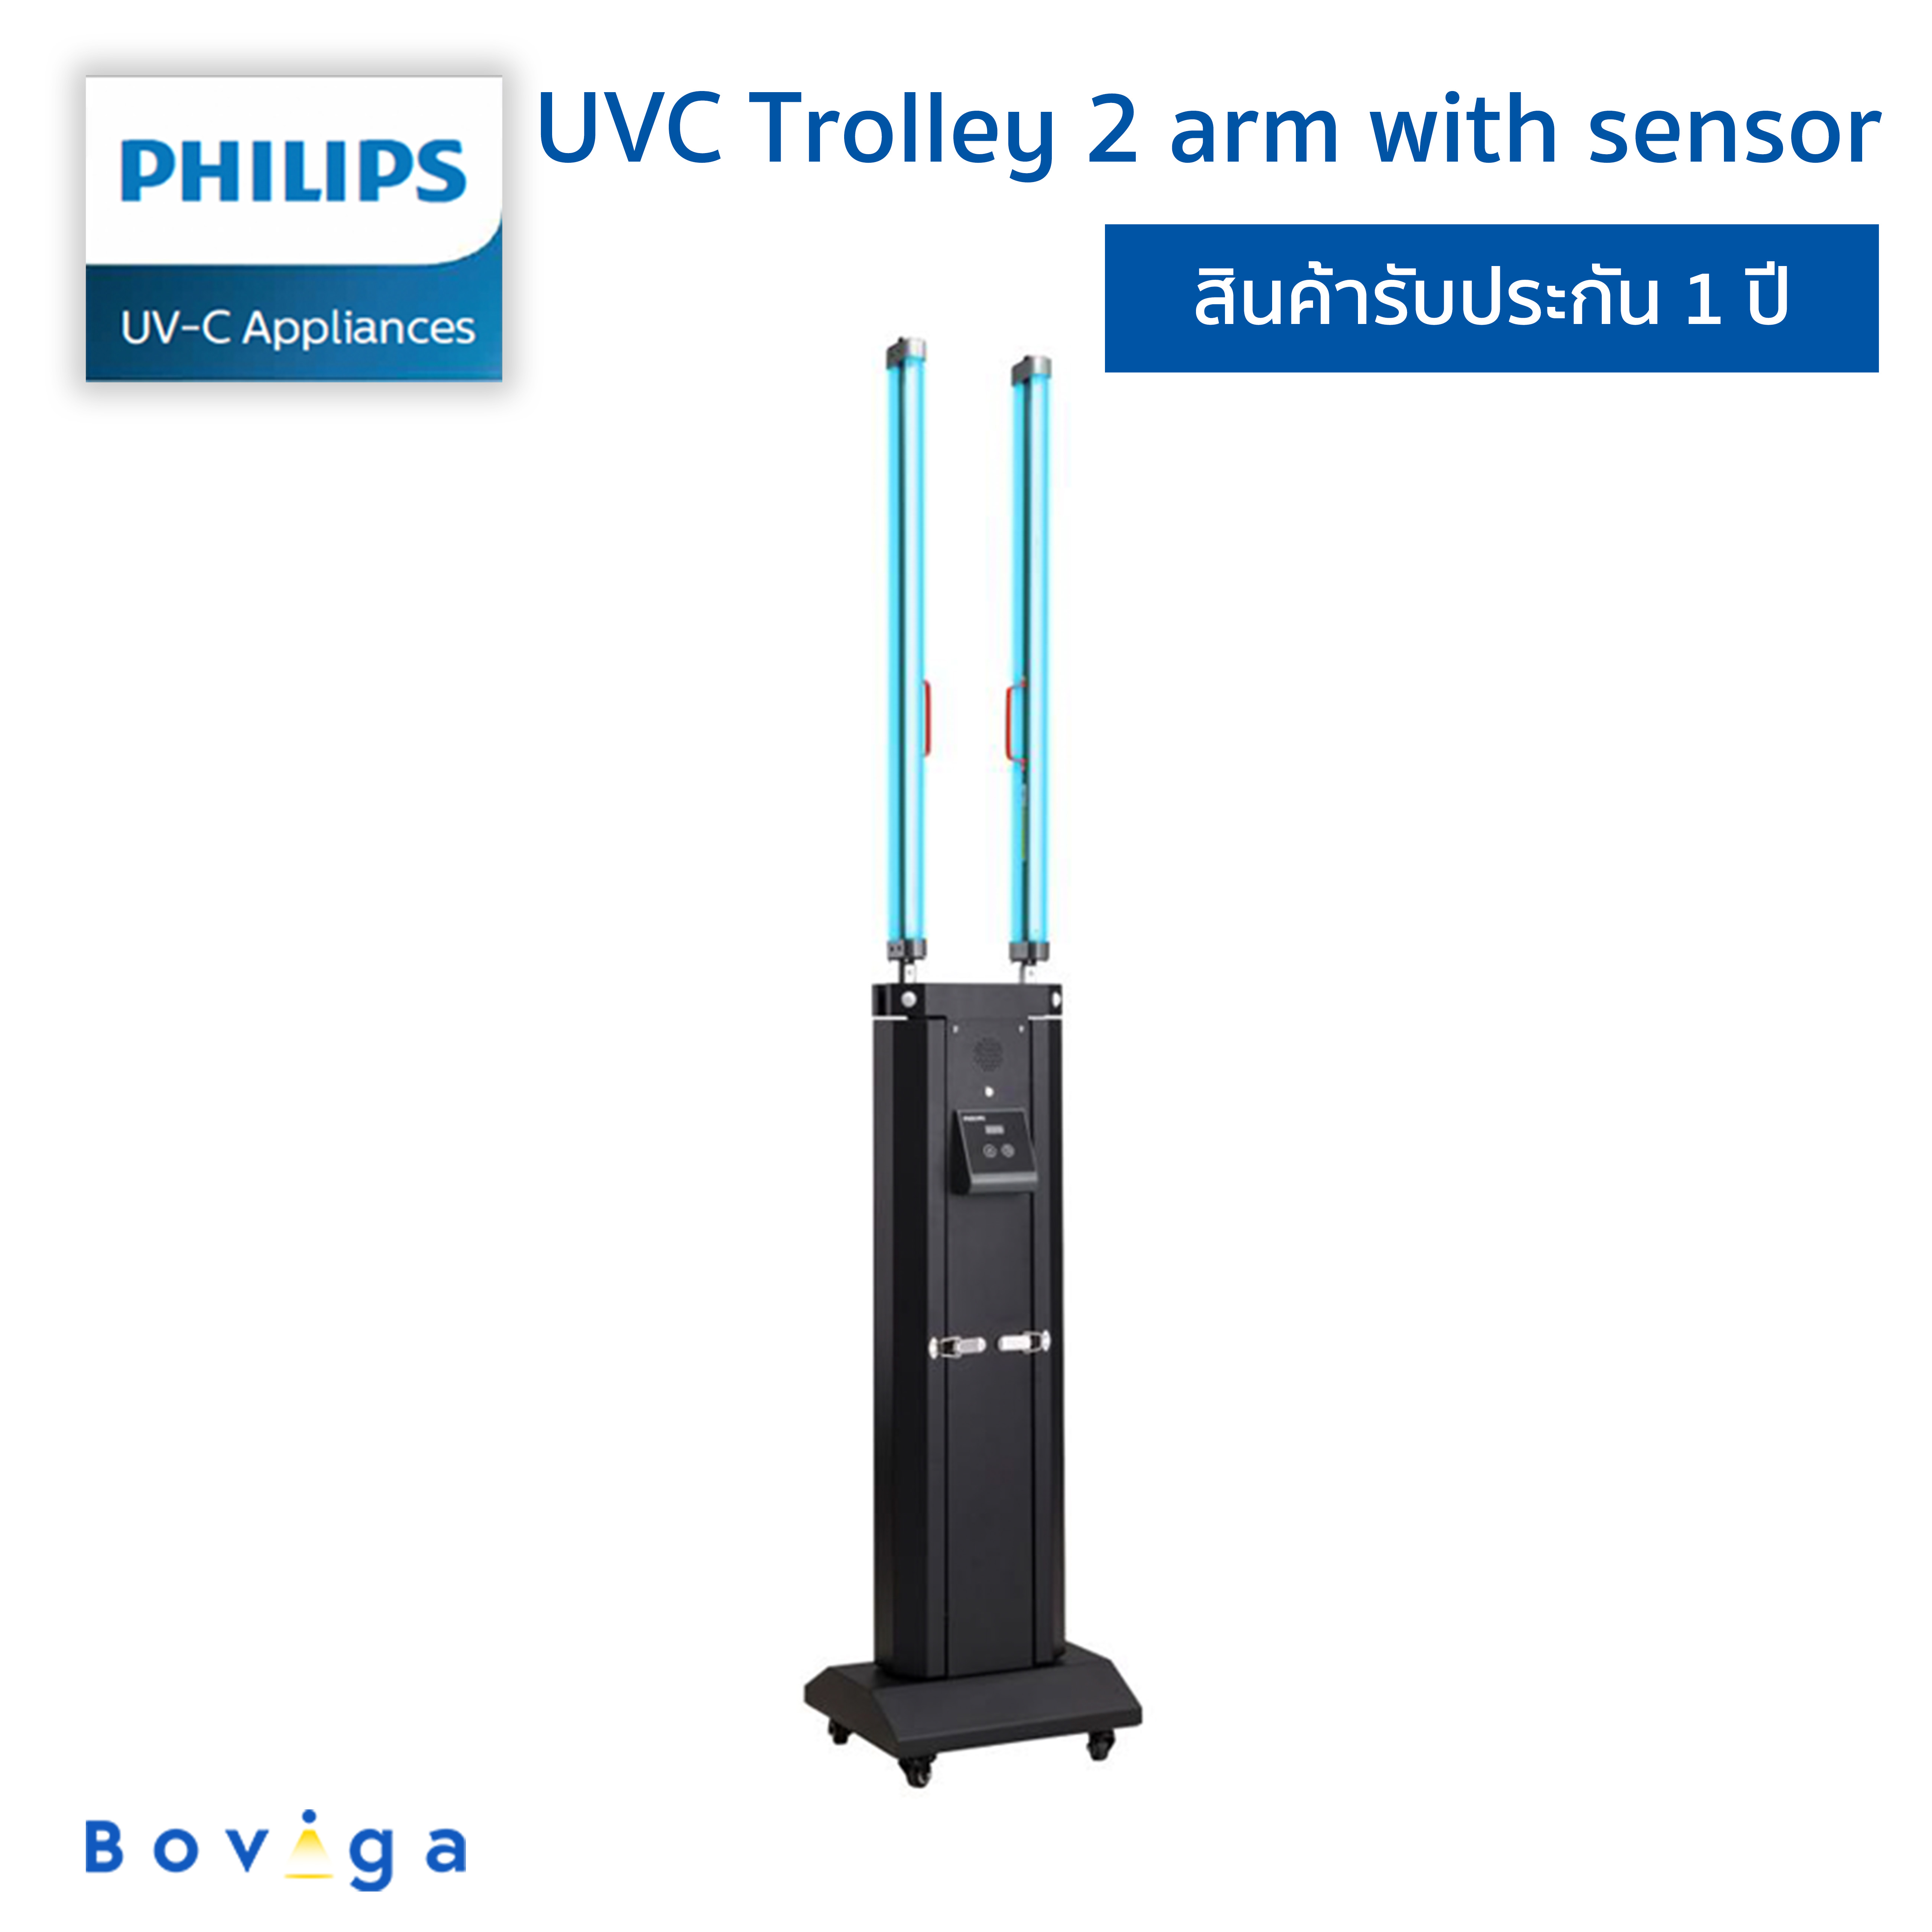 ฟิลิปส์ UVC เครื่องฆ่าเชื้อโรคแบบเคลื่อนย้ายได้ Gen2 แบบ 2 แขน มีเซ็นเซอร์ | UVC Trolley 2 arm with sensor Gen2 Philips